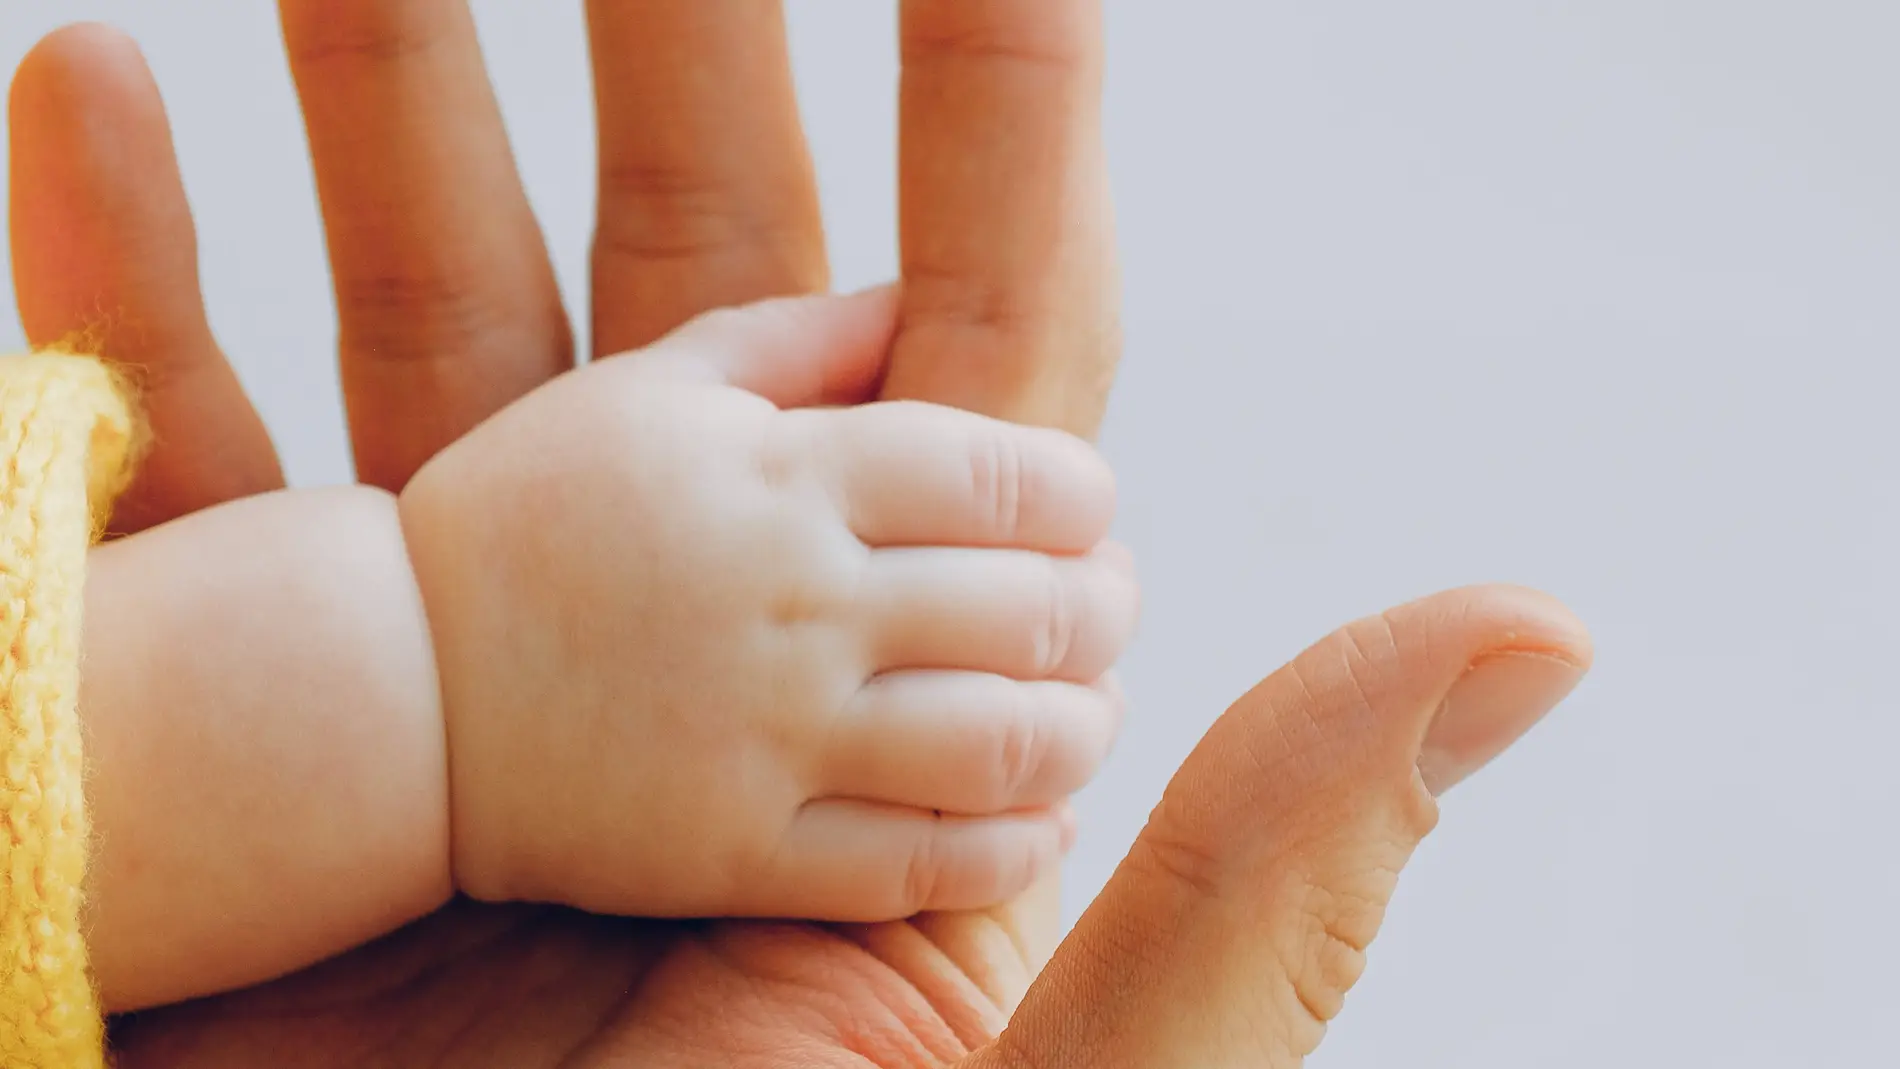 Imagen de archivo de la mano de un bebé